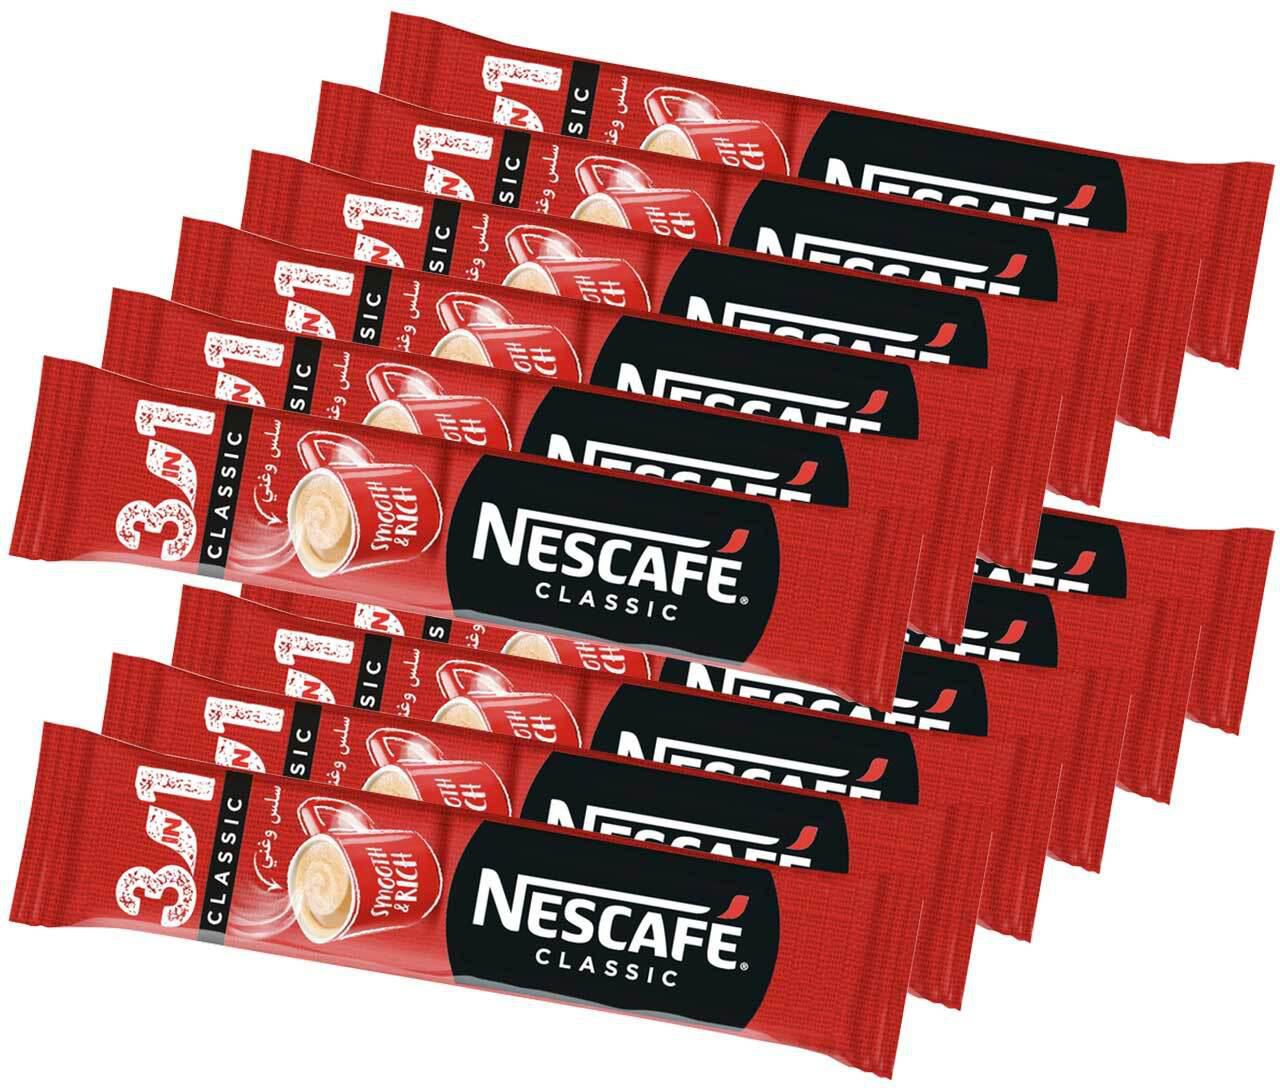 Nescafe 3 in1 20 g x12